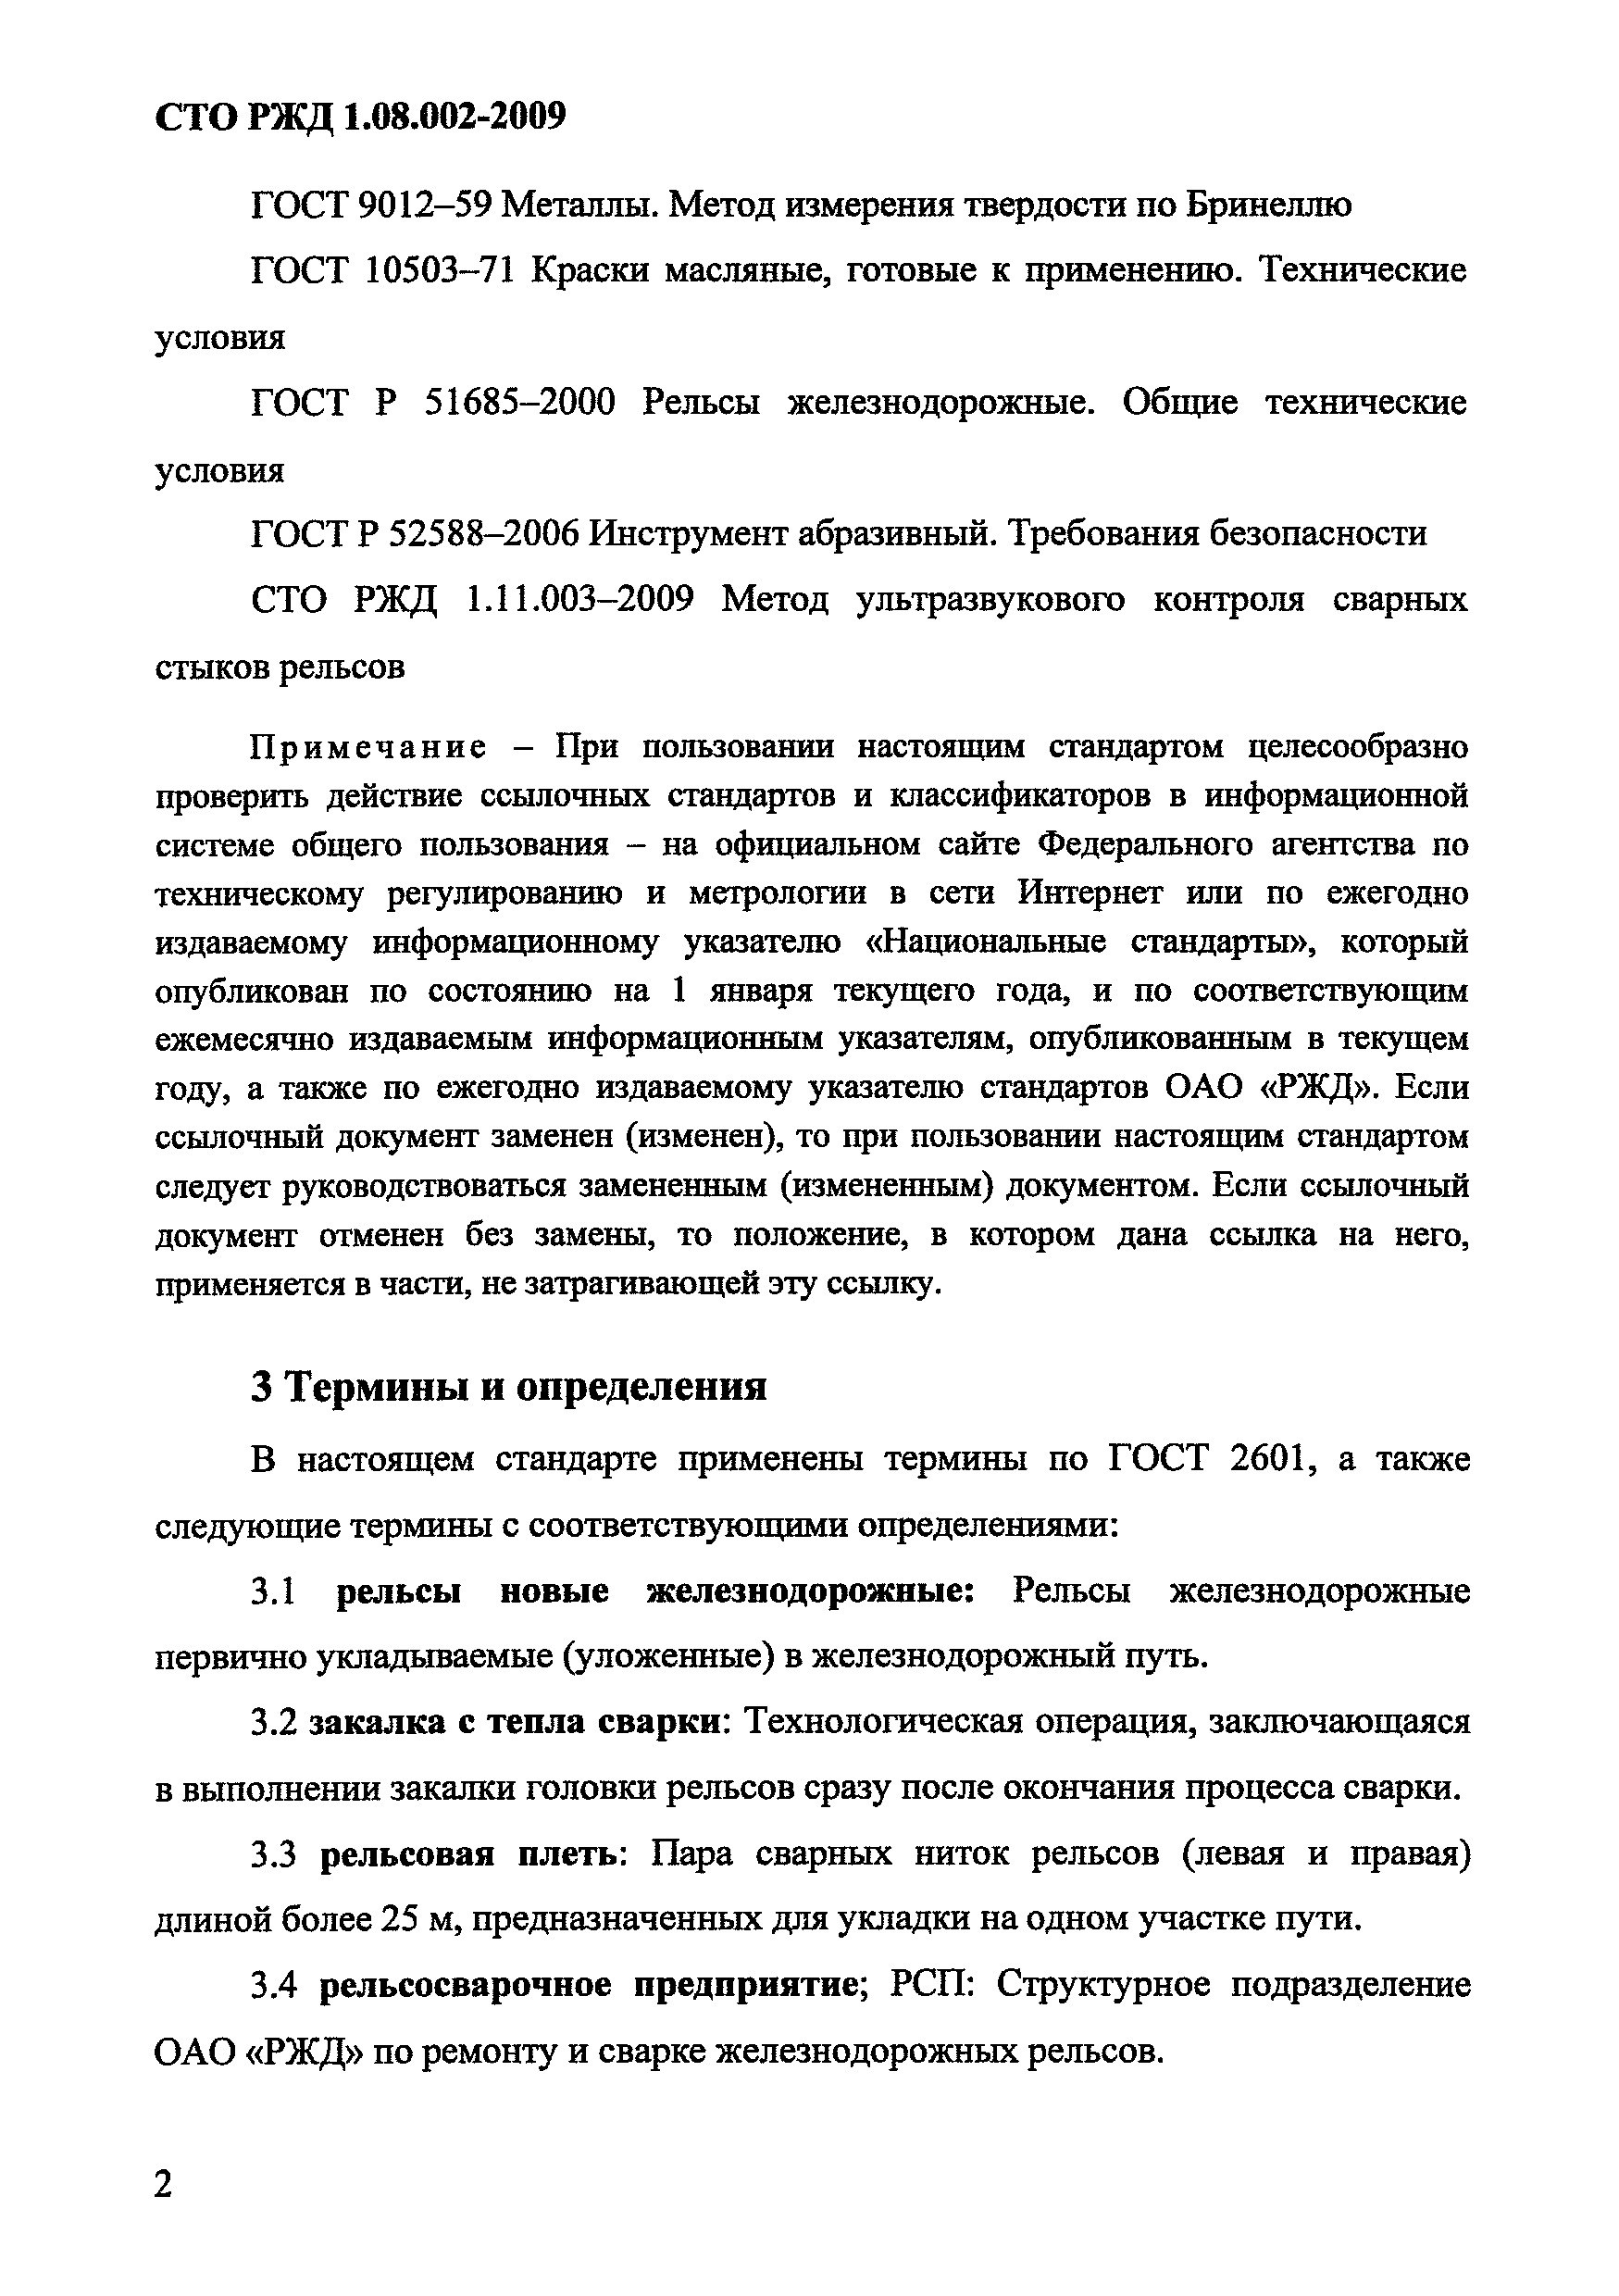 СТО РЖД 1.08.002-2009